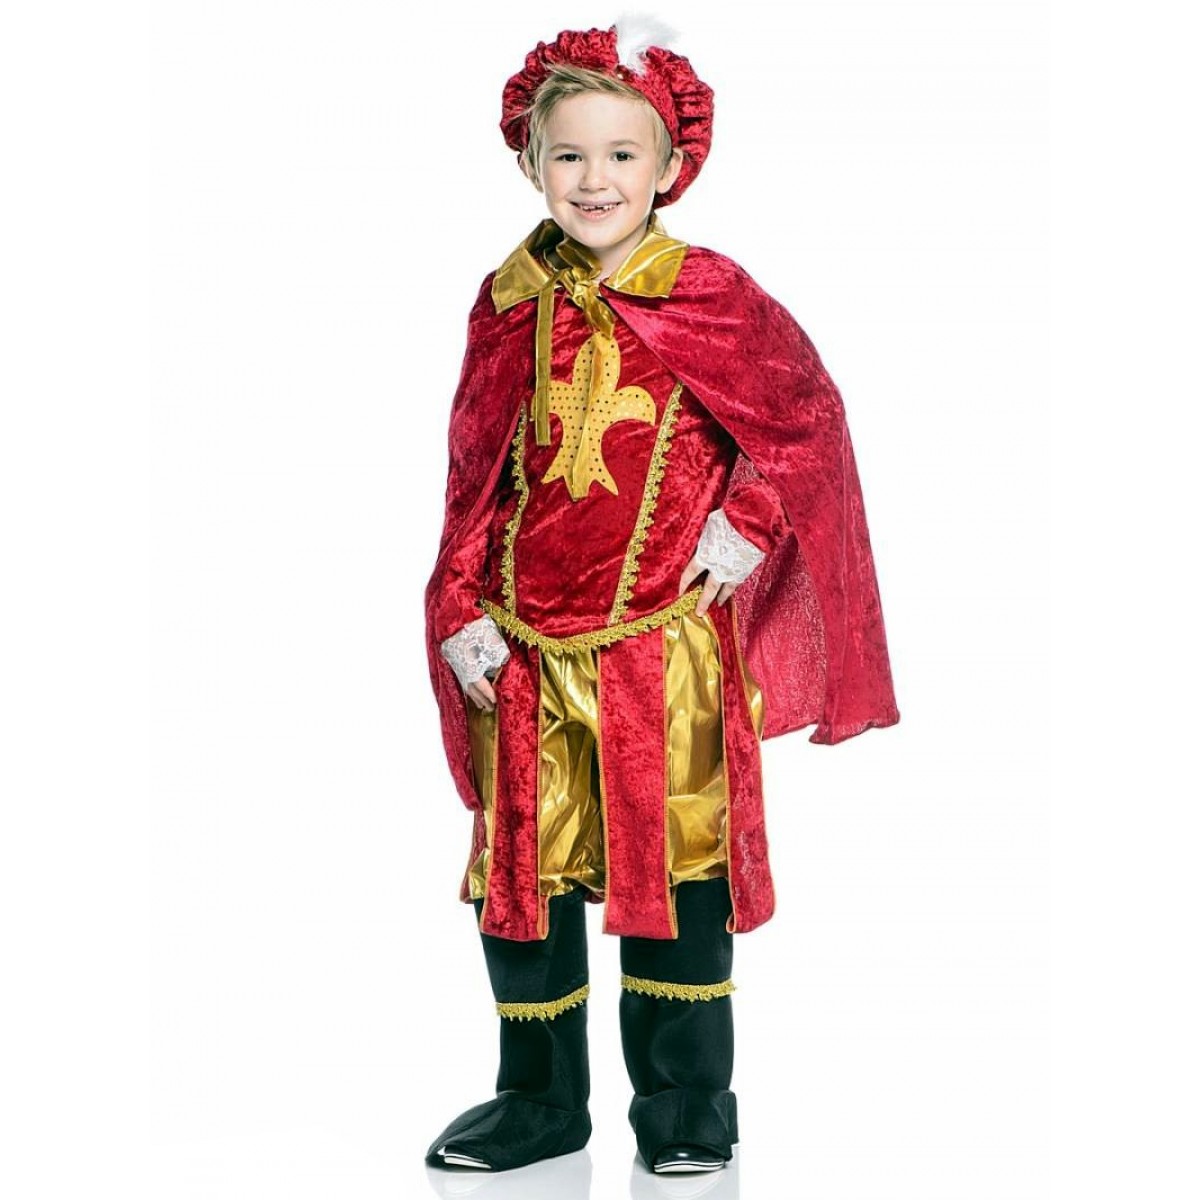 Карнавальный костюм Принца, костюм принца, пажа, придворного,  Карнавалия